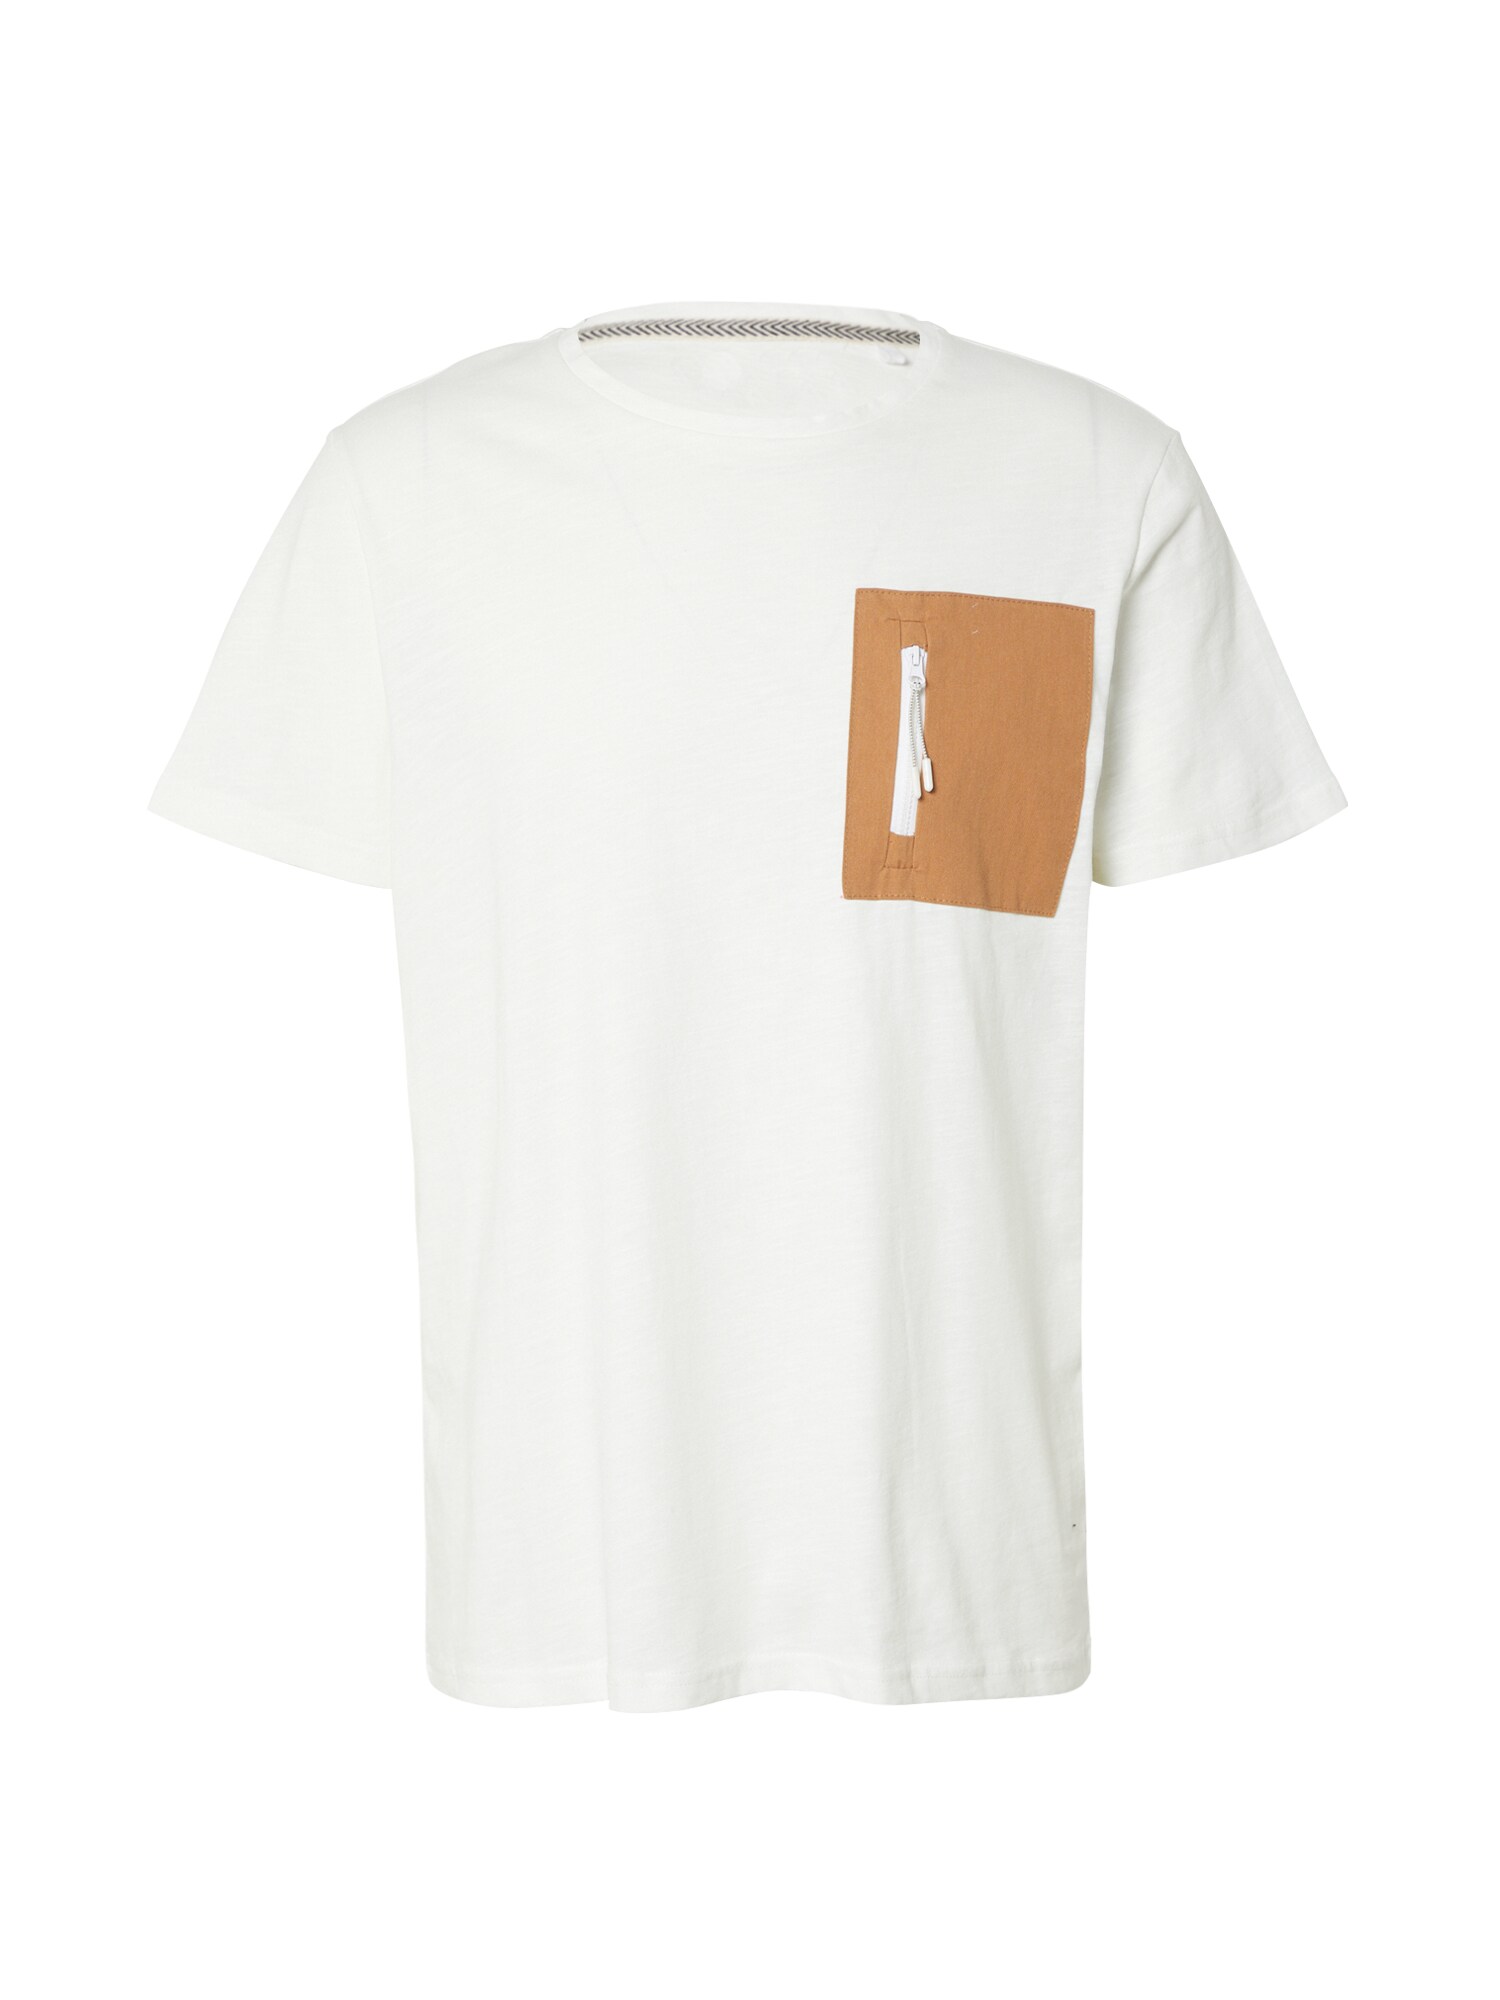 T-Shirt von Blend